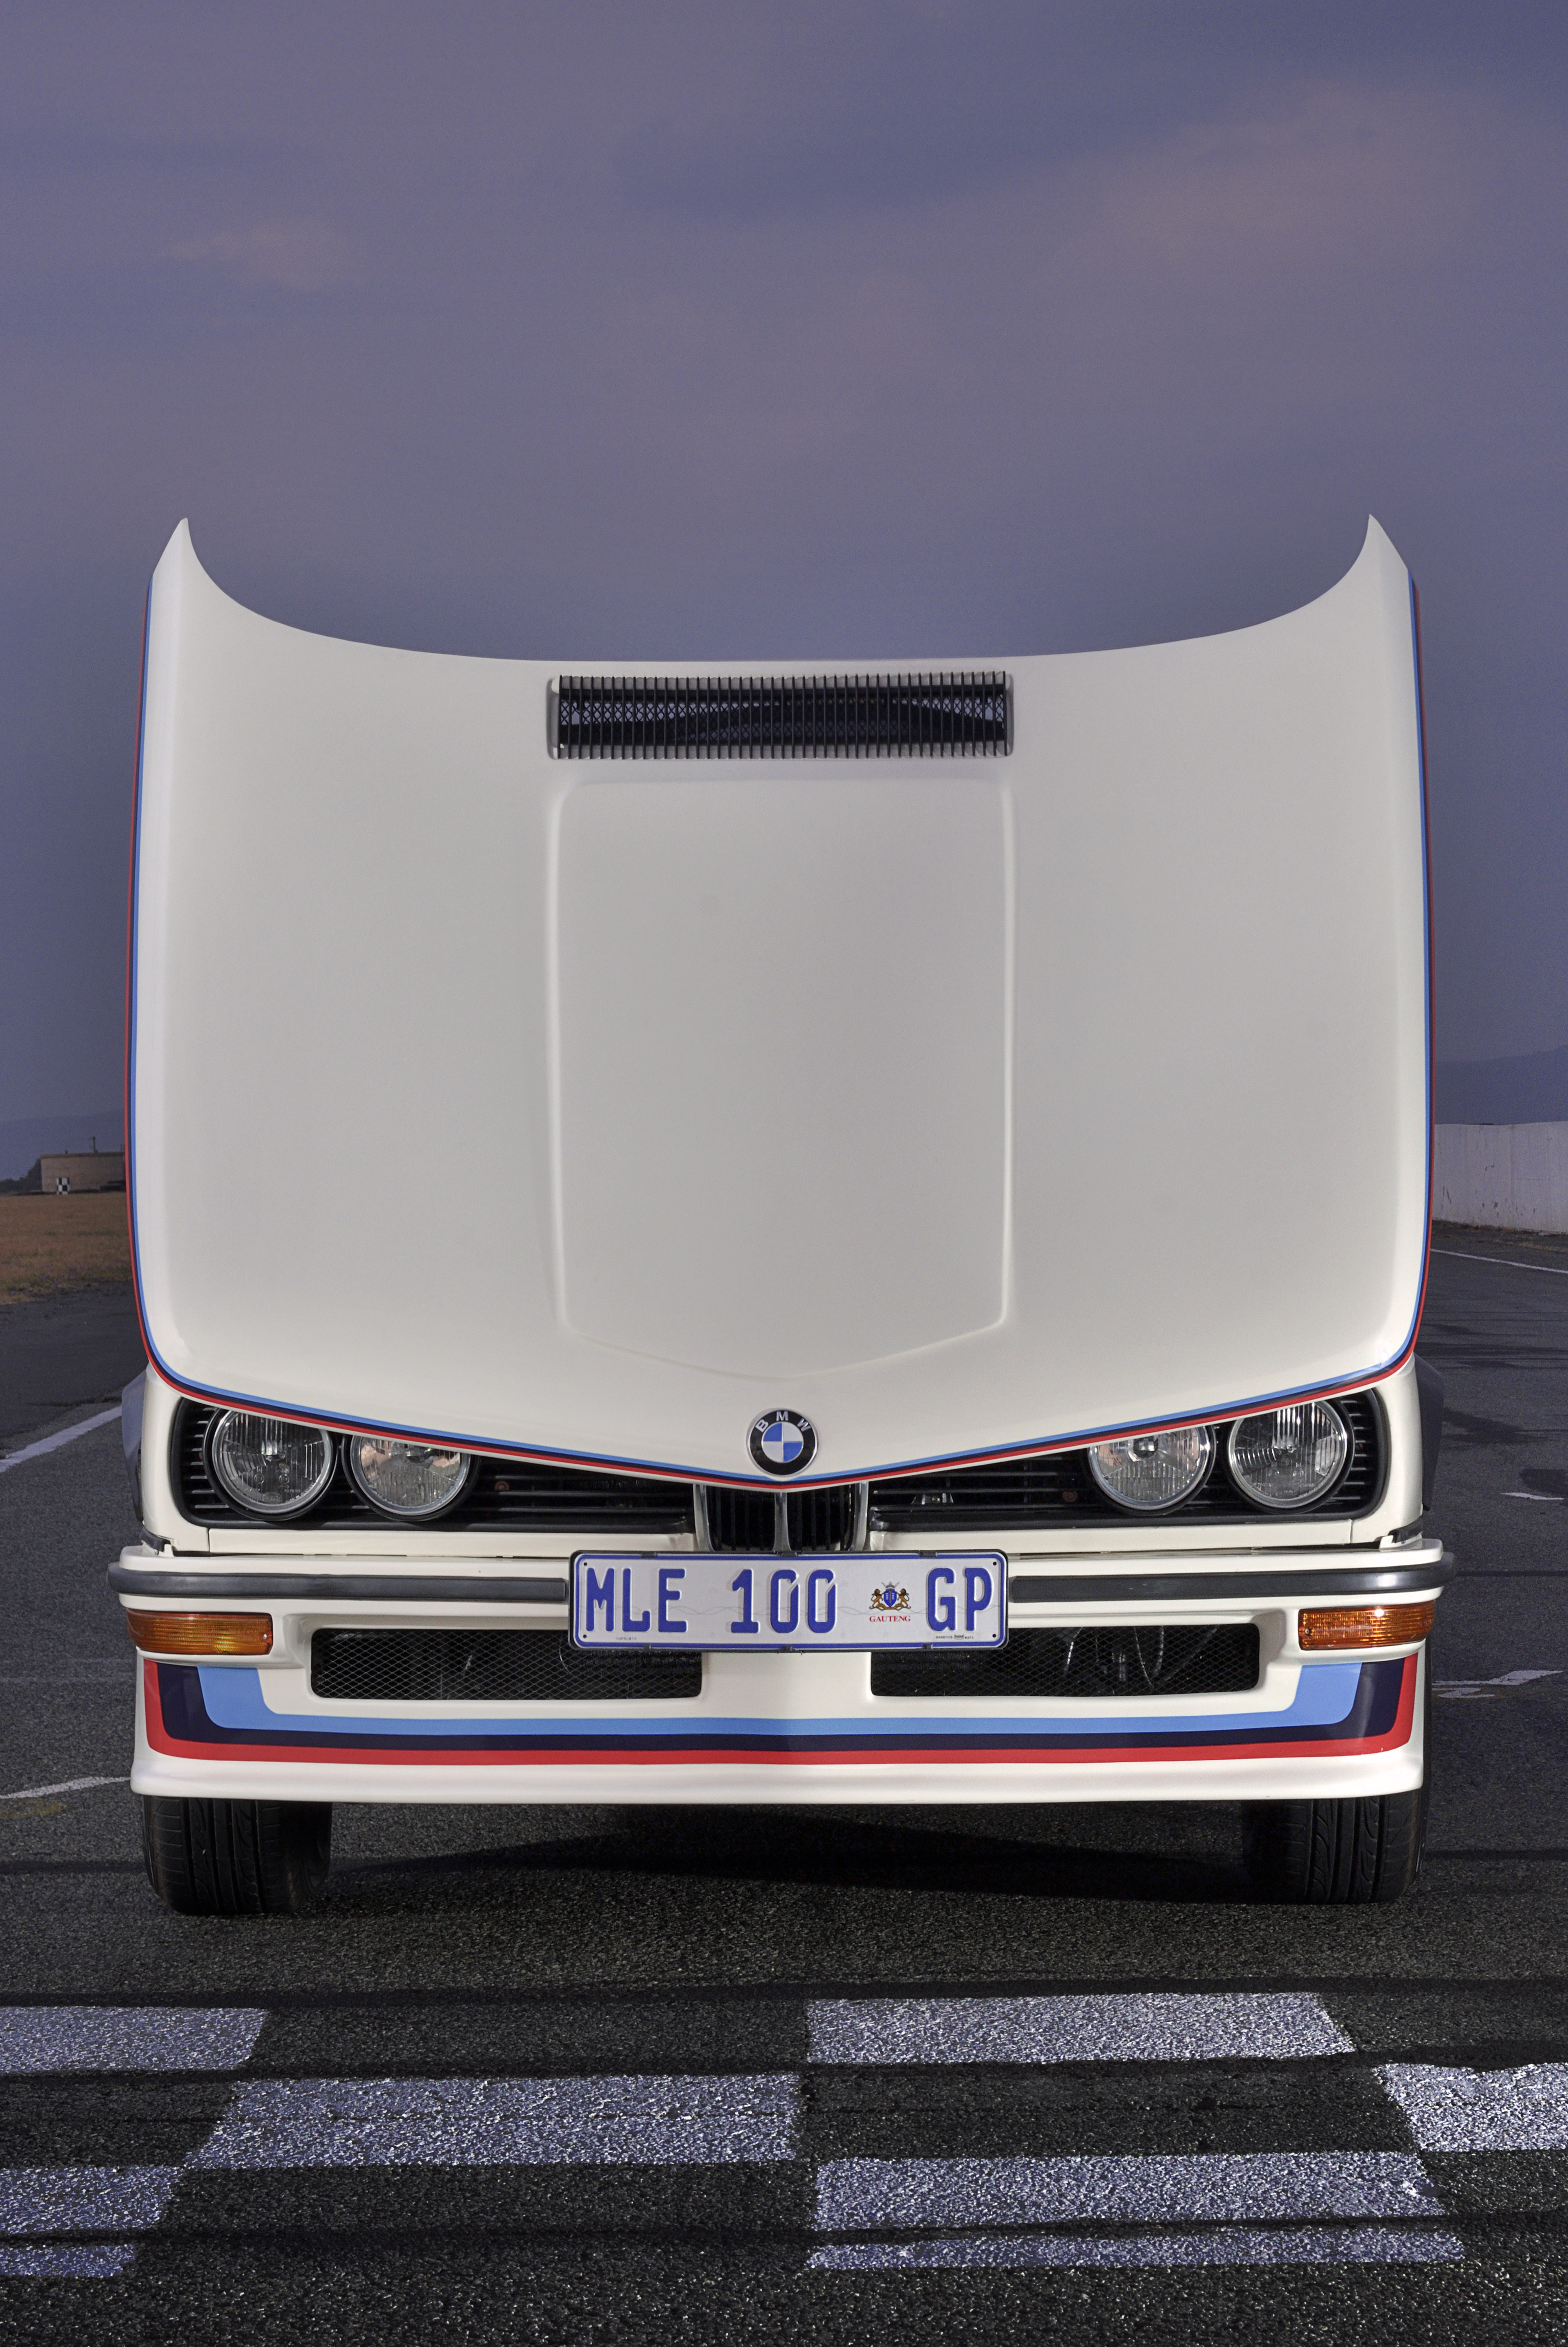 BMW Group South Africa ha svelato il suo ultimo progetto di restauro che ha avuto come protagonista la "leggendaria" BMW 530 MLE.